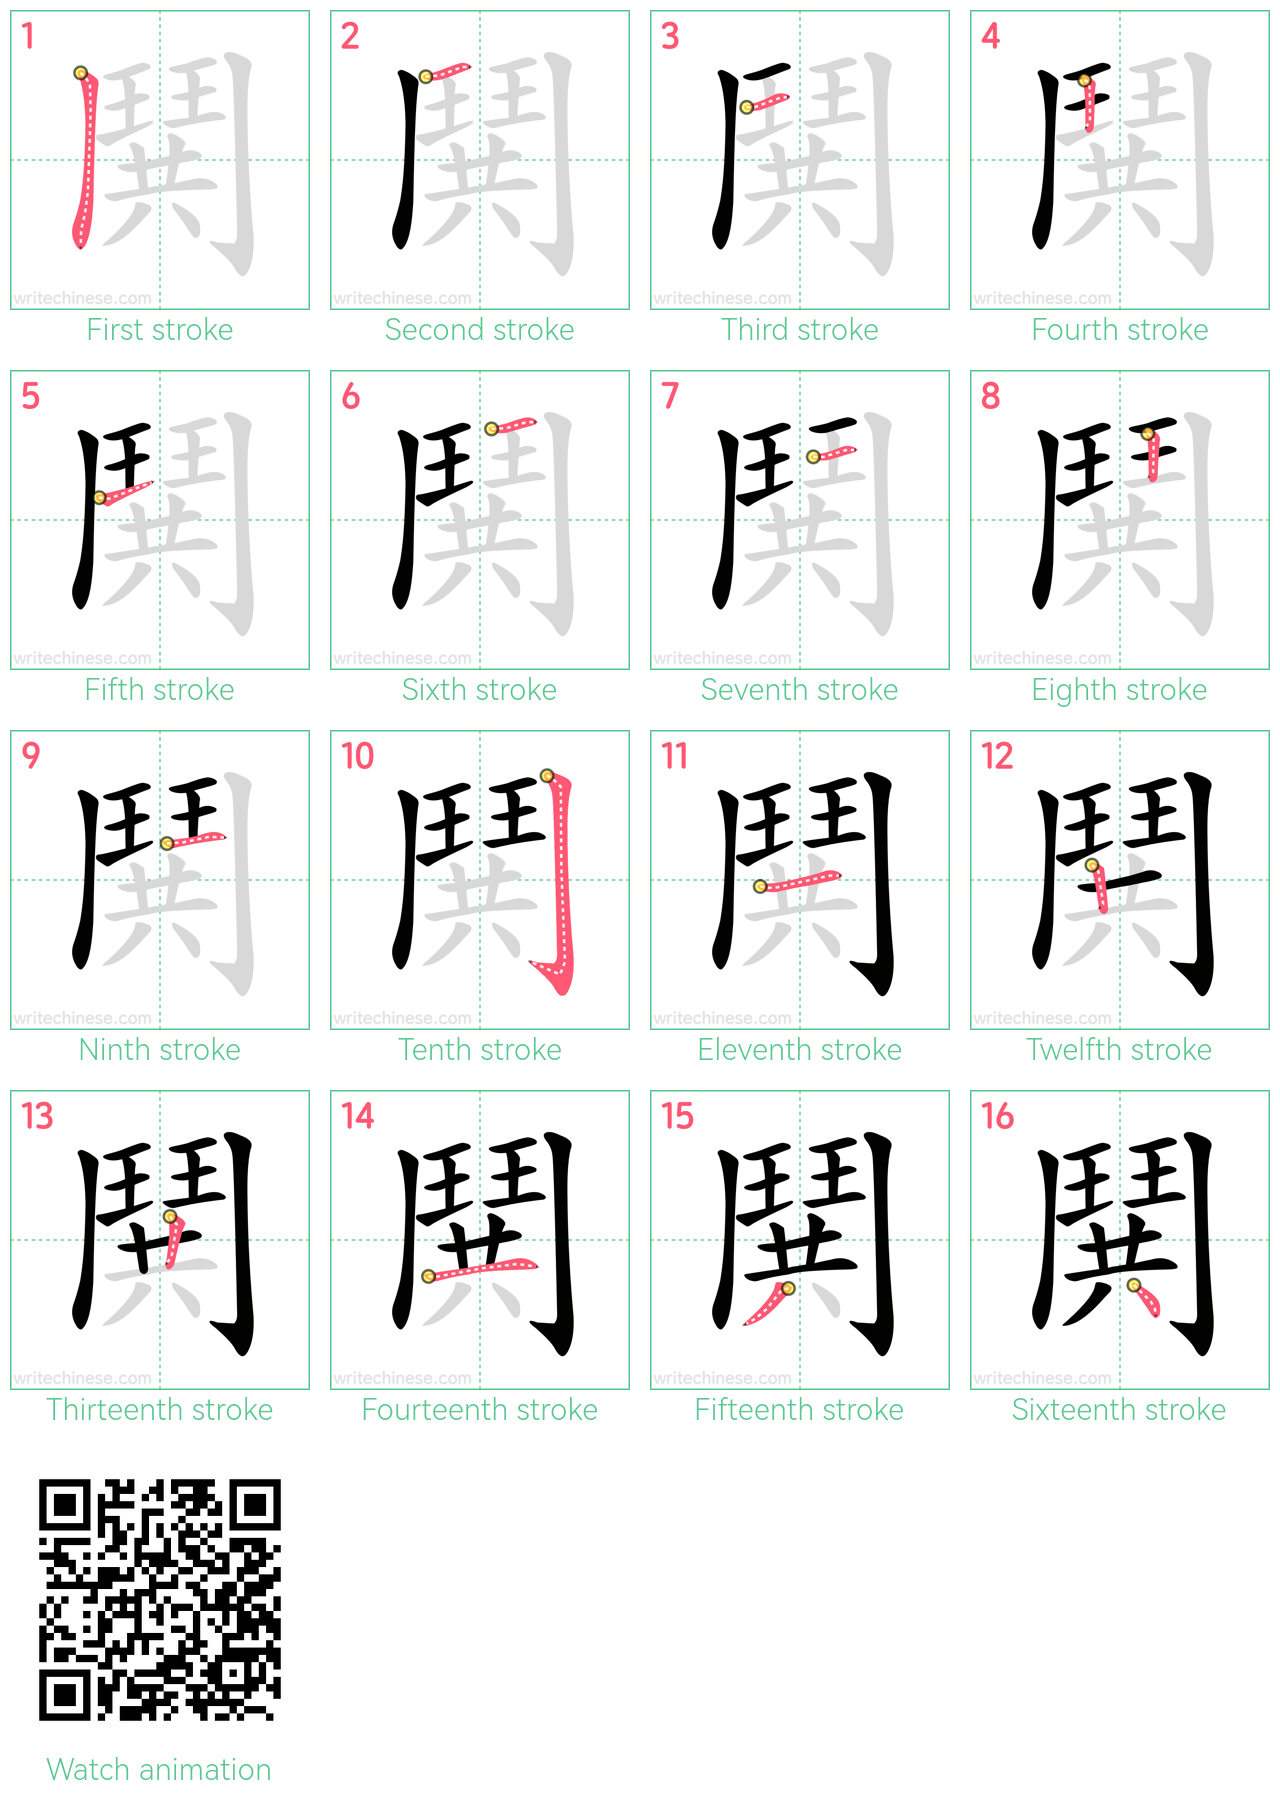 鬨 step-by-step stroke order diagrams